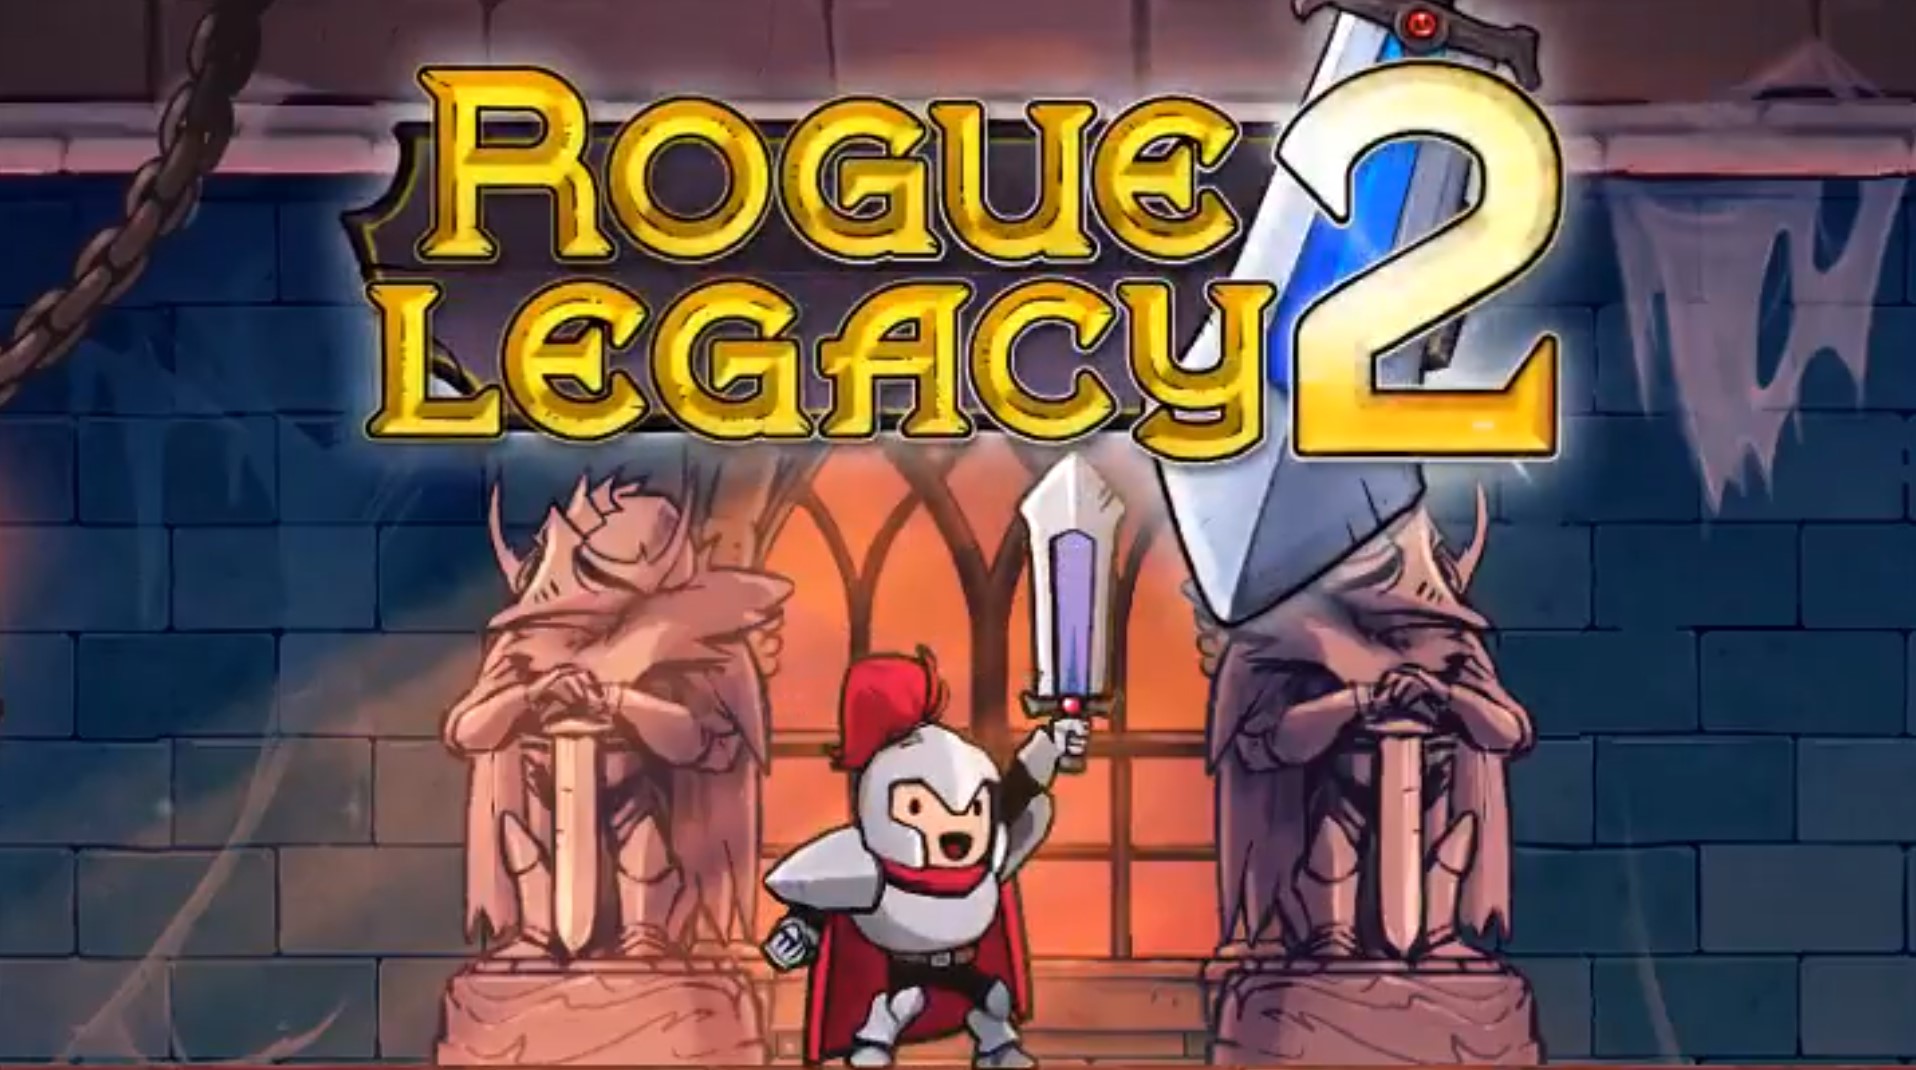 던전 탐색 액션 「로그 레거시 2 (Rogue Legacy 2)」4월 28일 정식 릴리스. Epic Games 스토어는 전작 무료 배포.